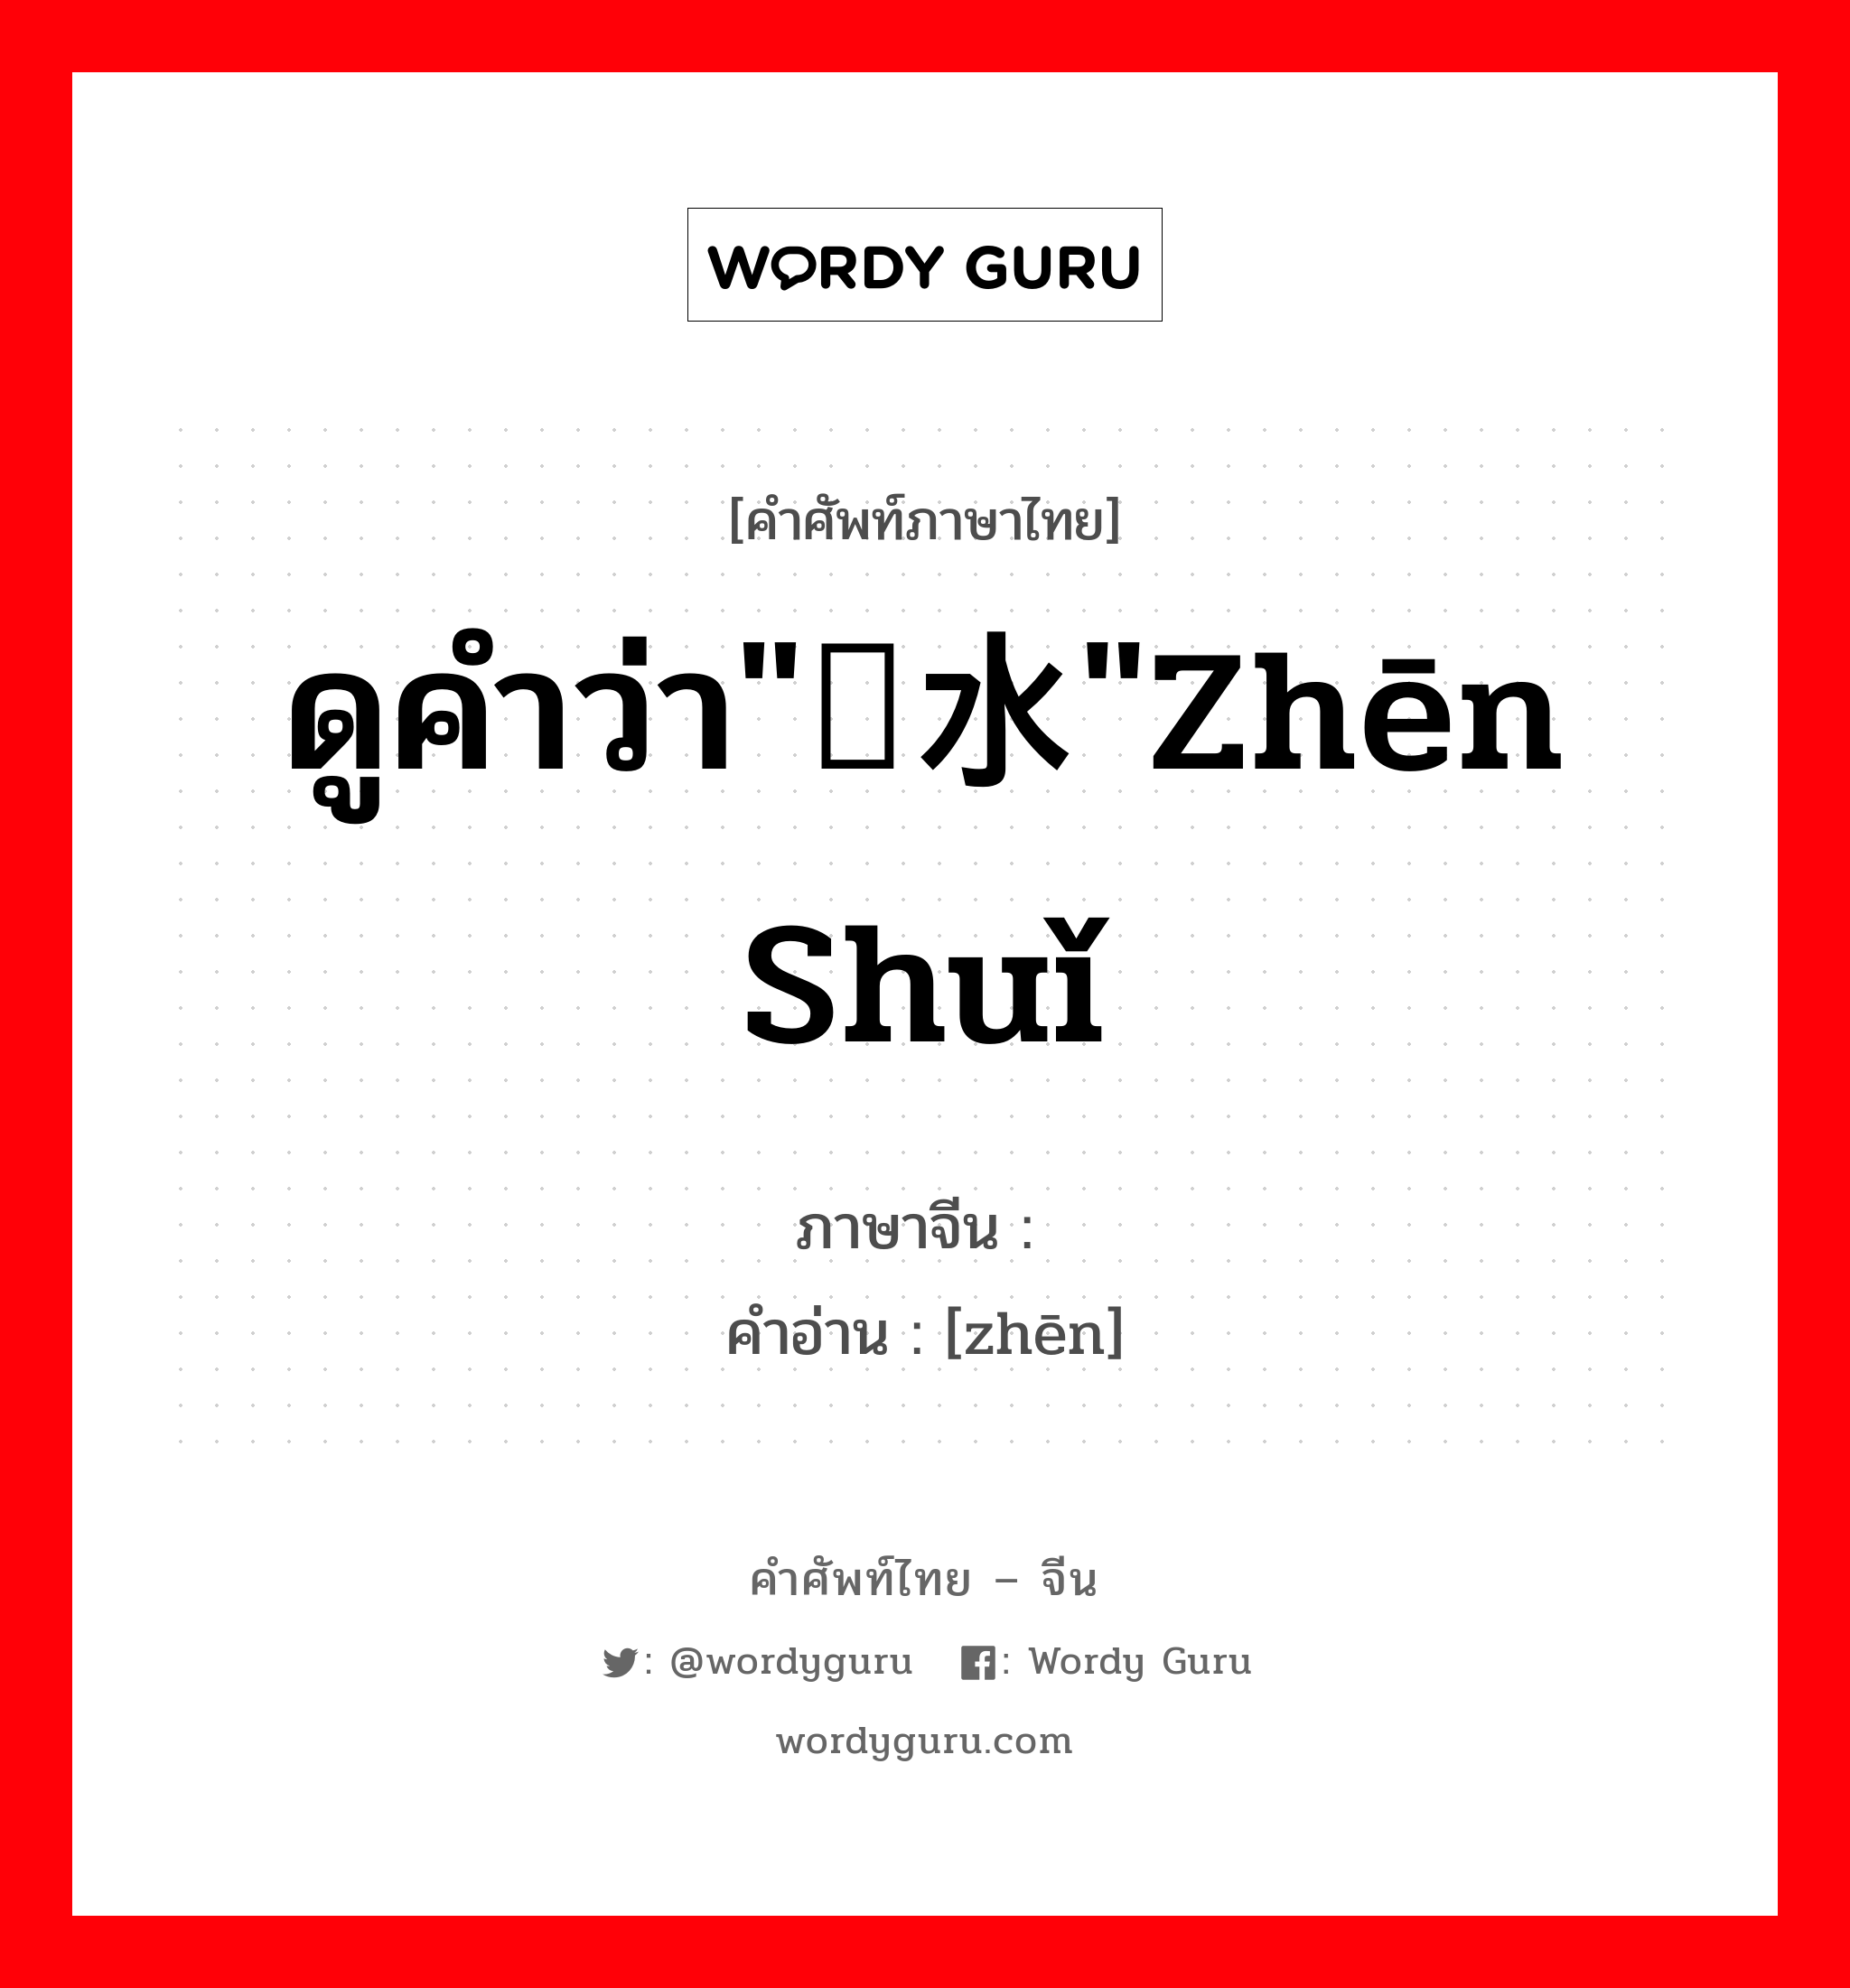 浈 ภาษาไทย?, คำศัพท์ภาษาไทย - จีน 浈 ภาษาจีน ดูคำว่า"浈水"zhēn shuǐ คำอ่าน [zhēn]